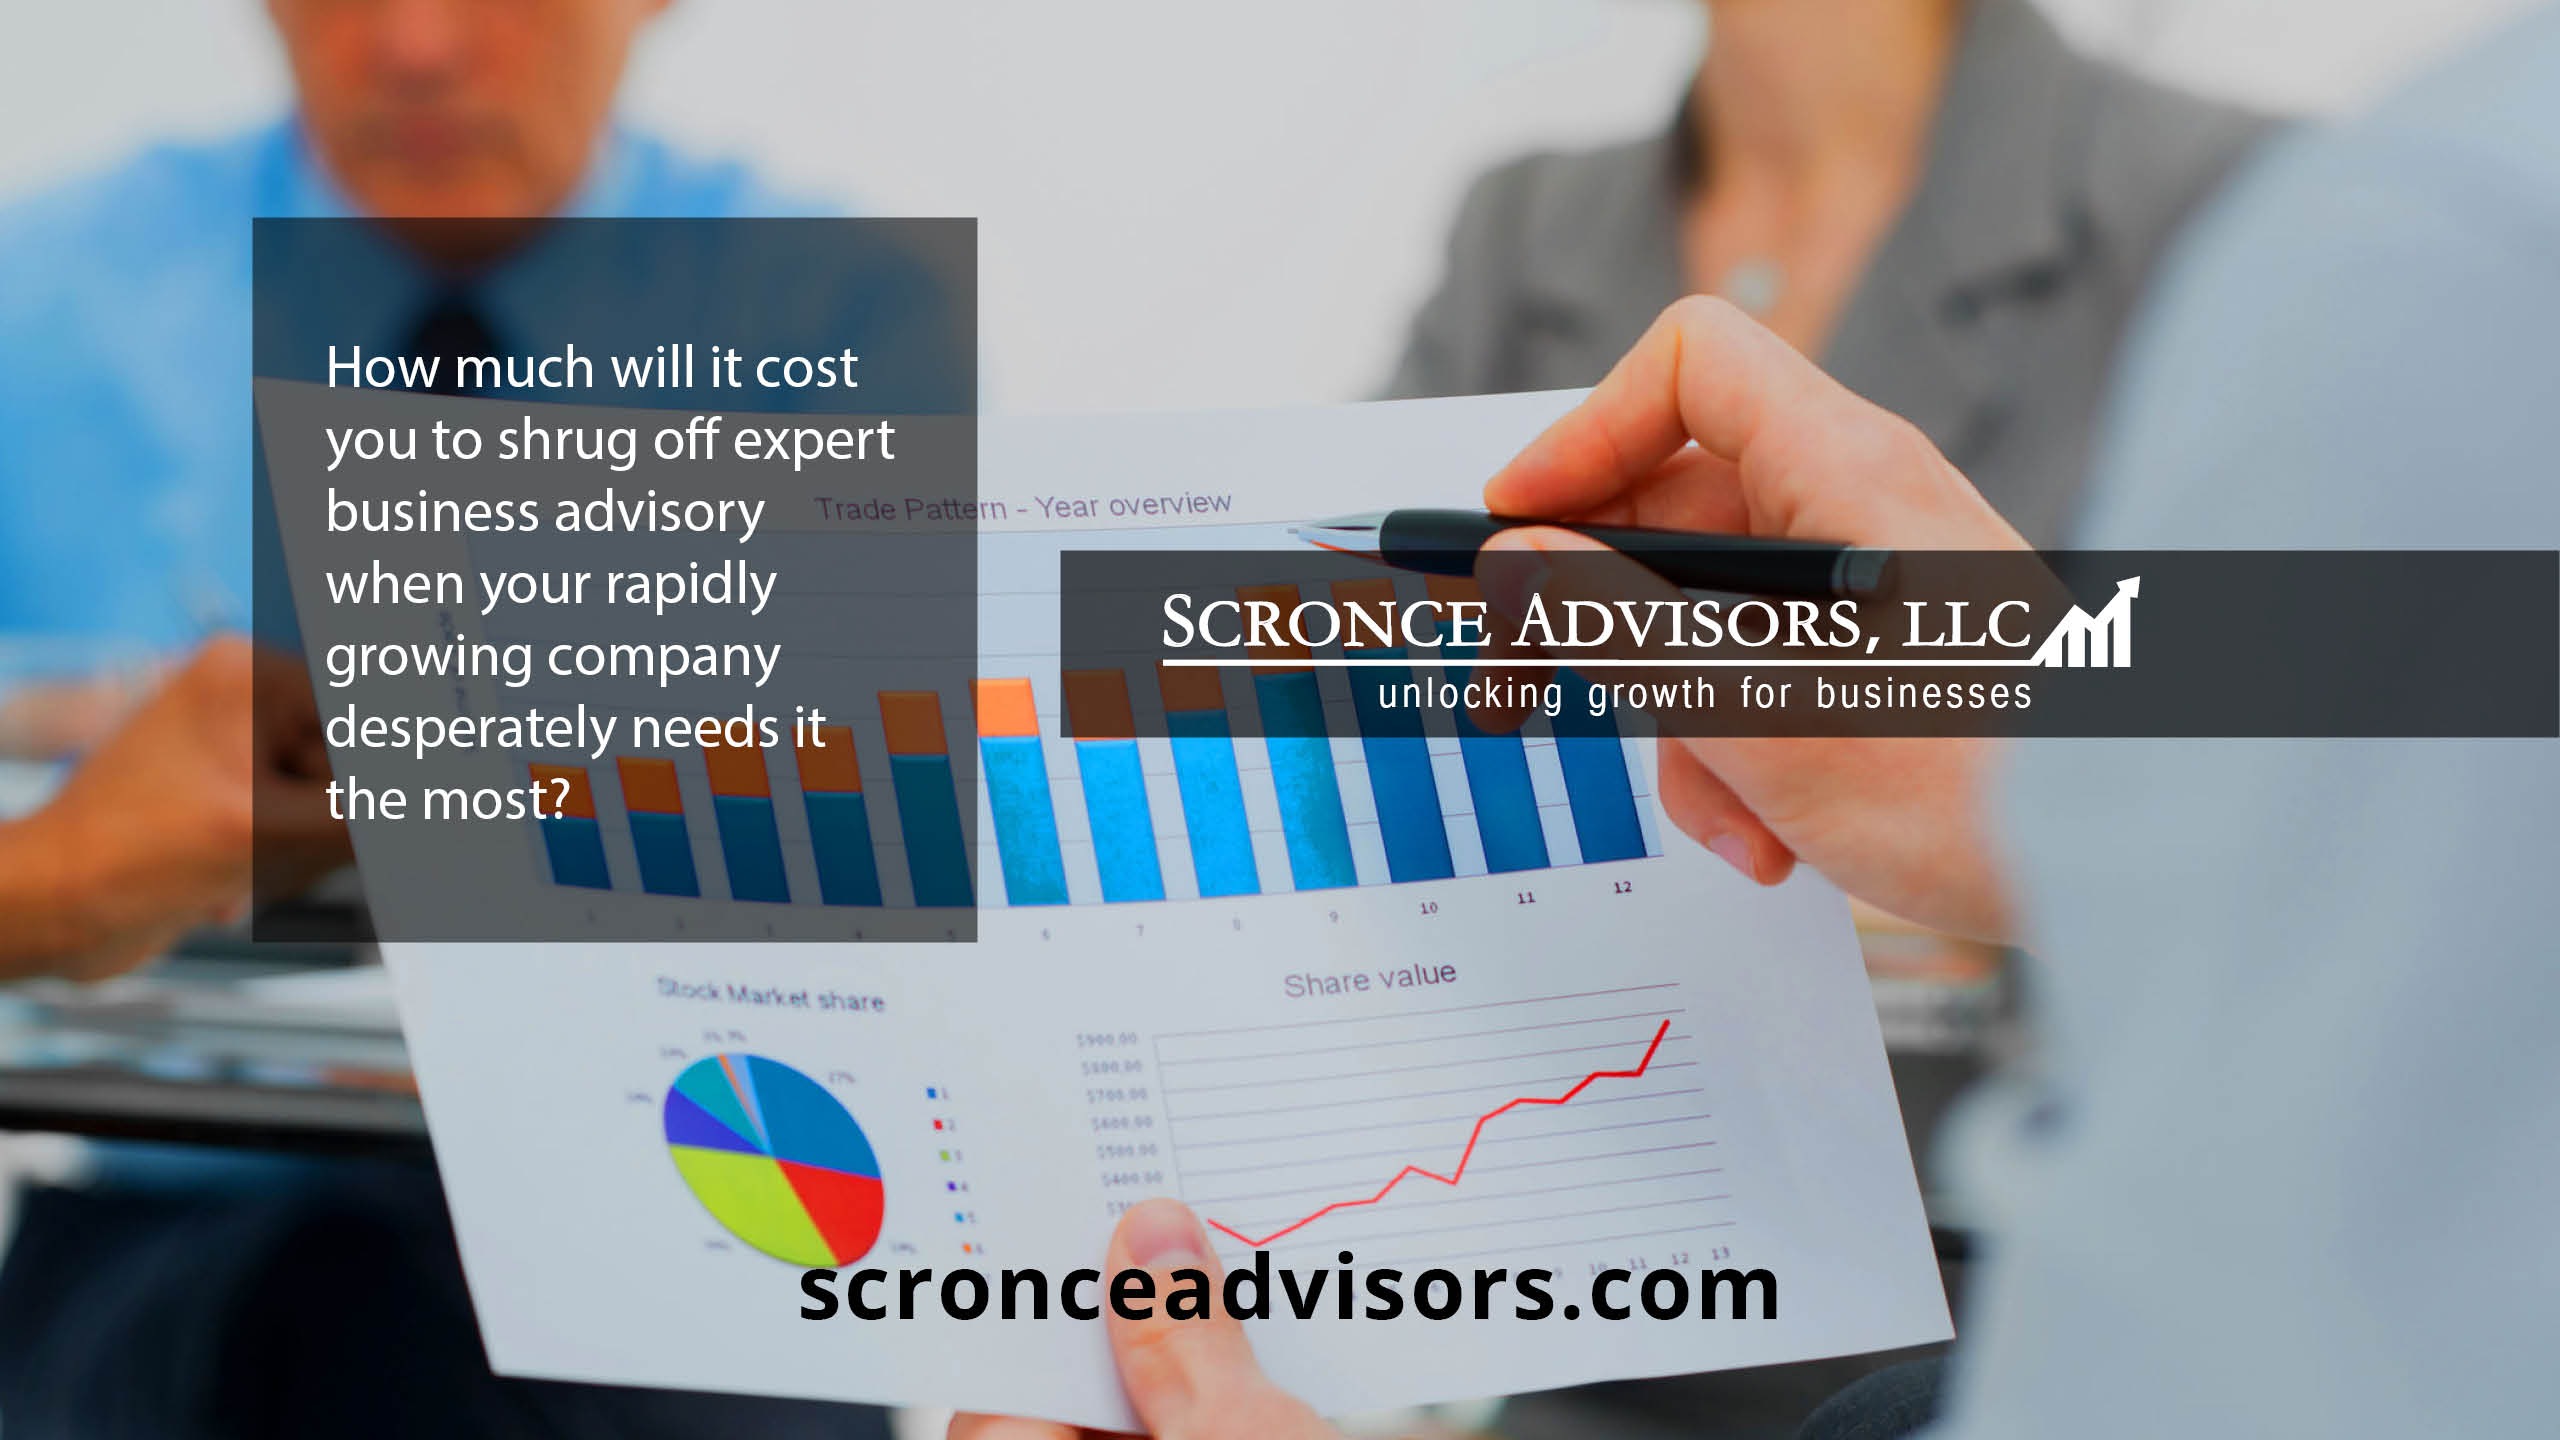 Scronce Advisors, LLC